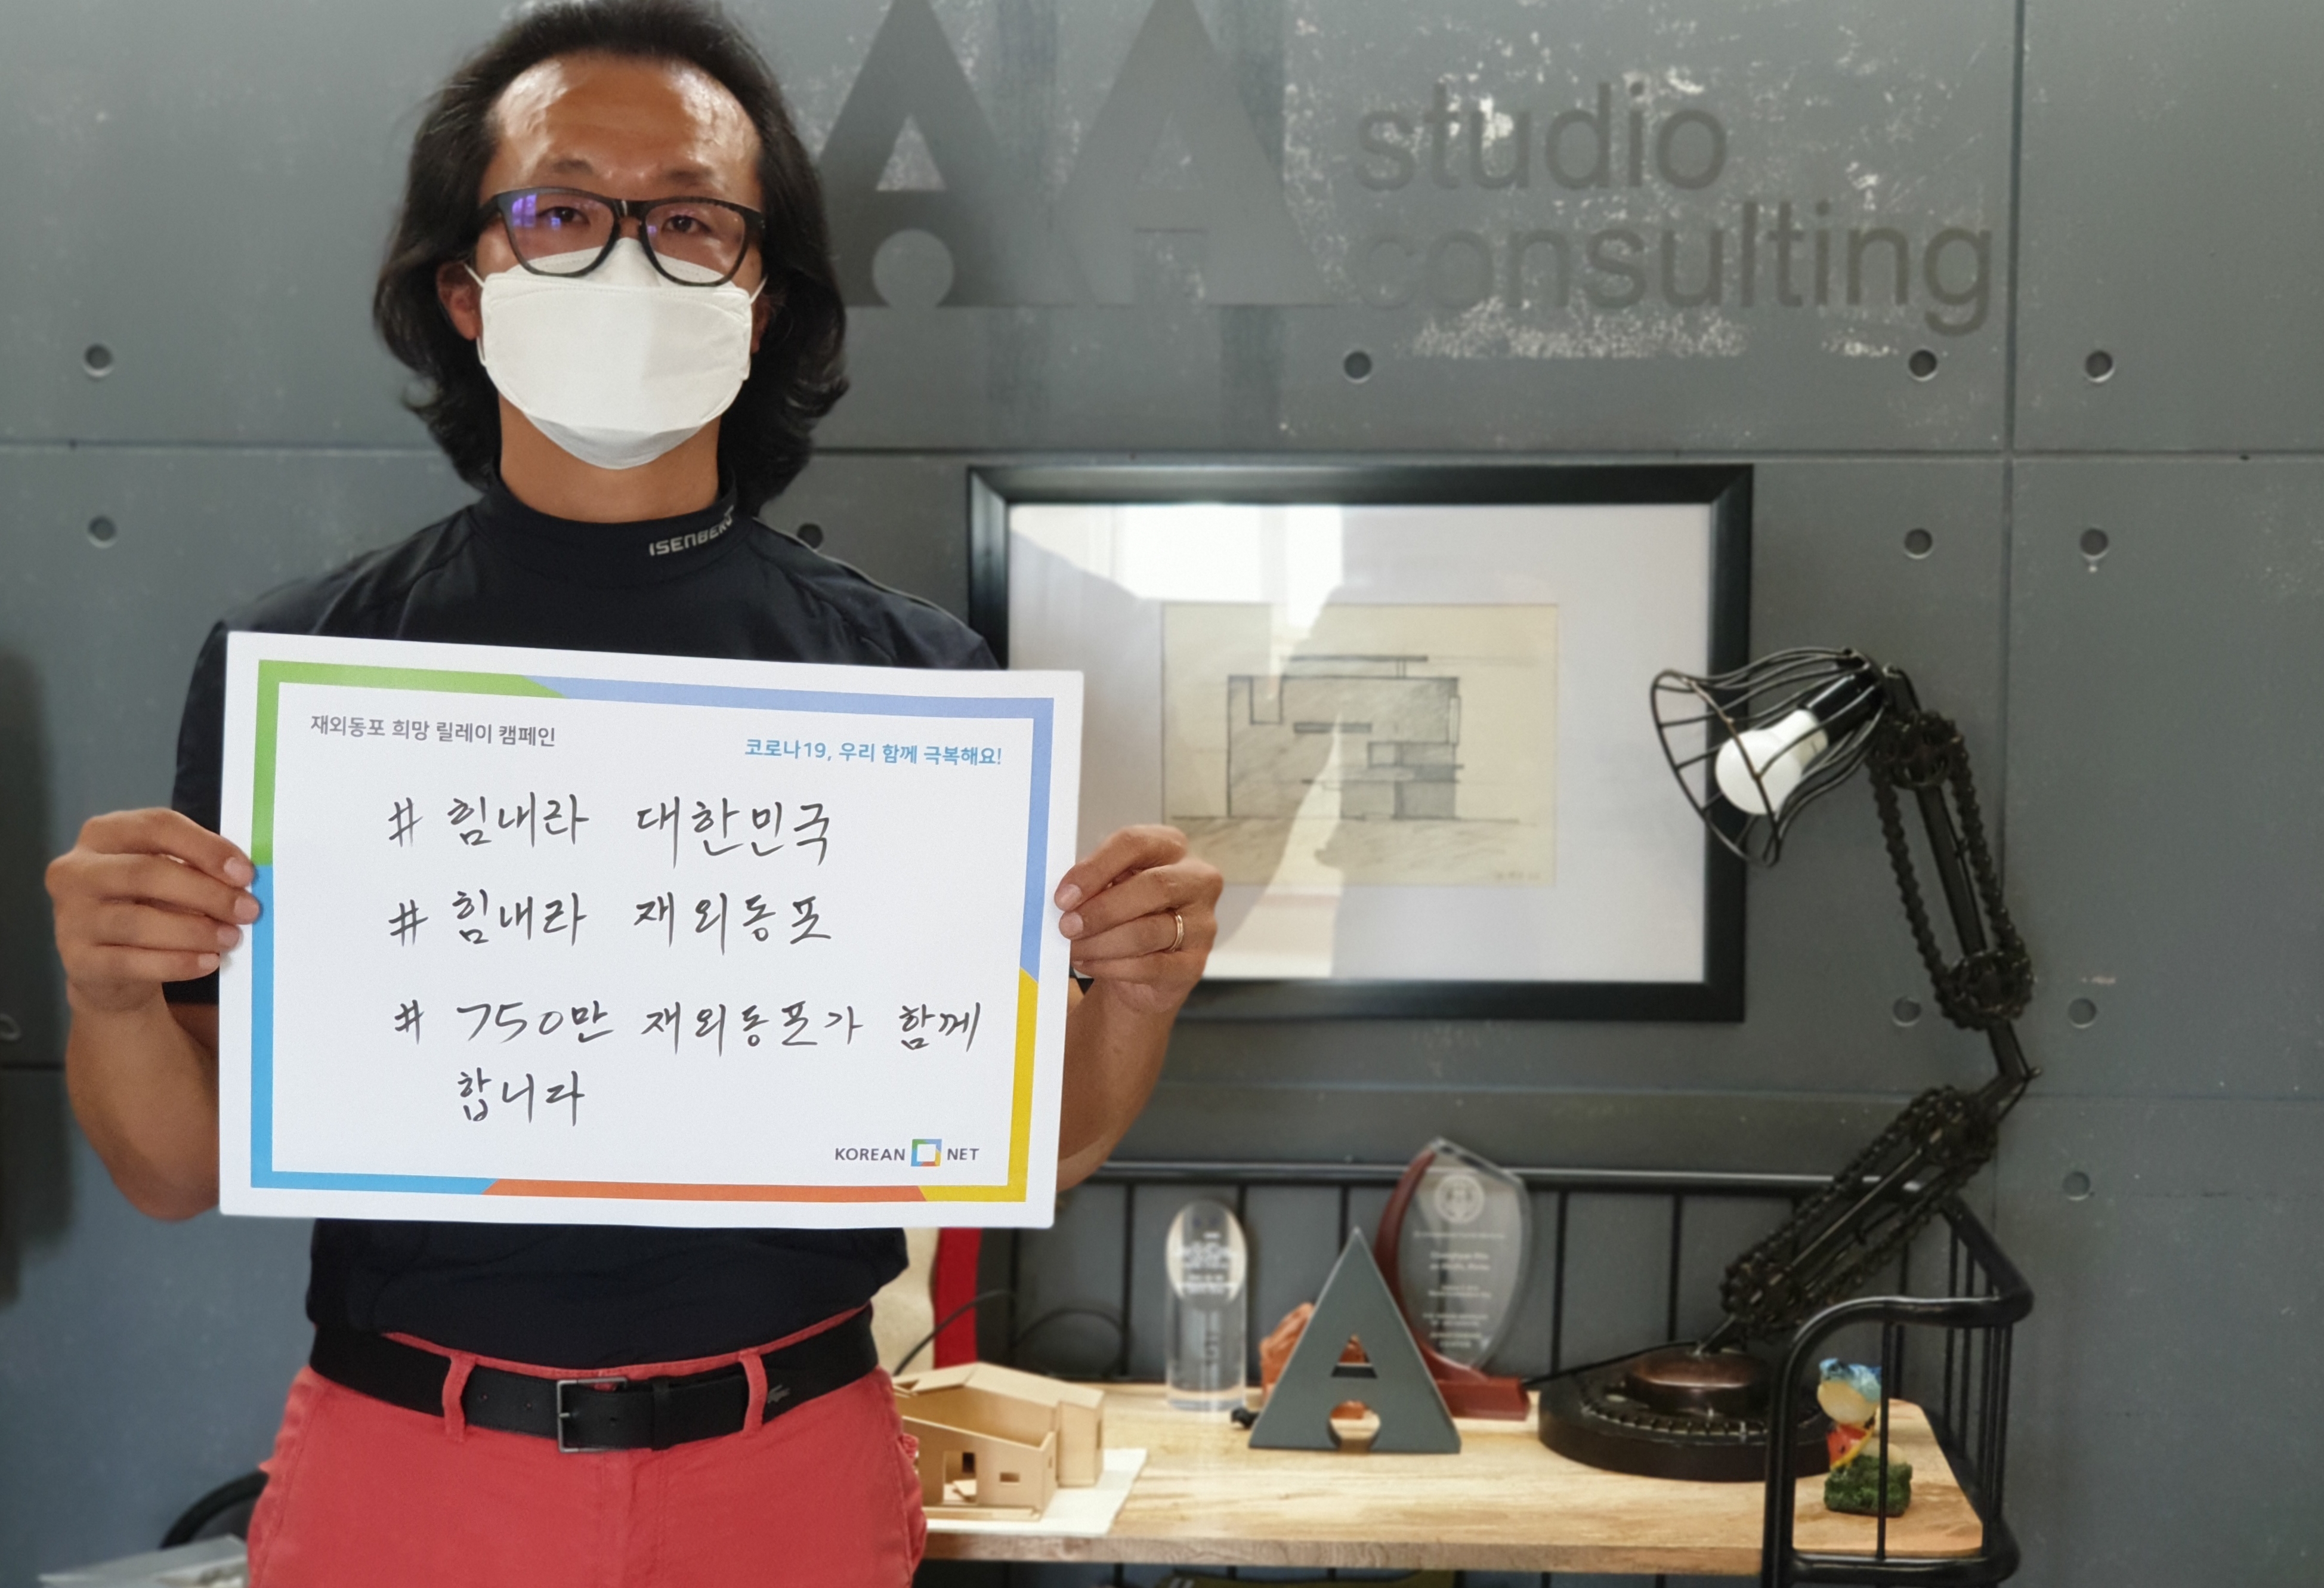 [이미지설명]  김창현  YBLN 홍보위원장/ AA Studio  대표님